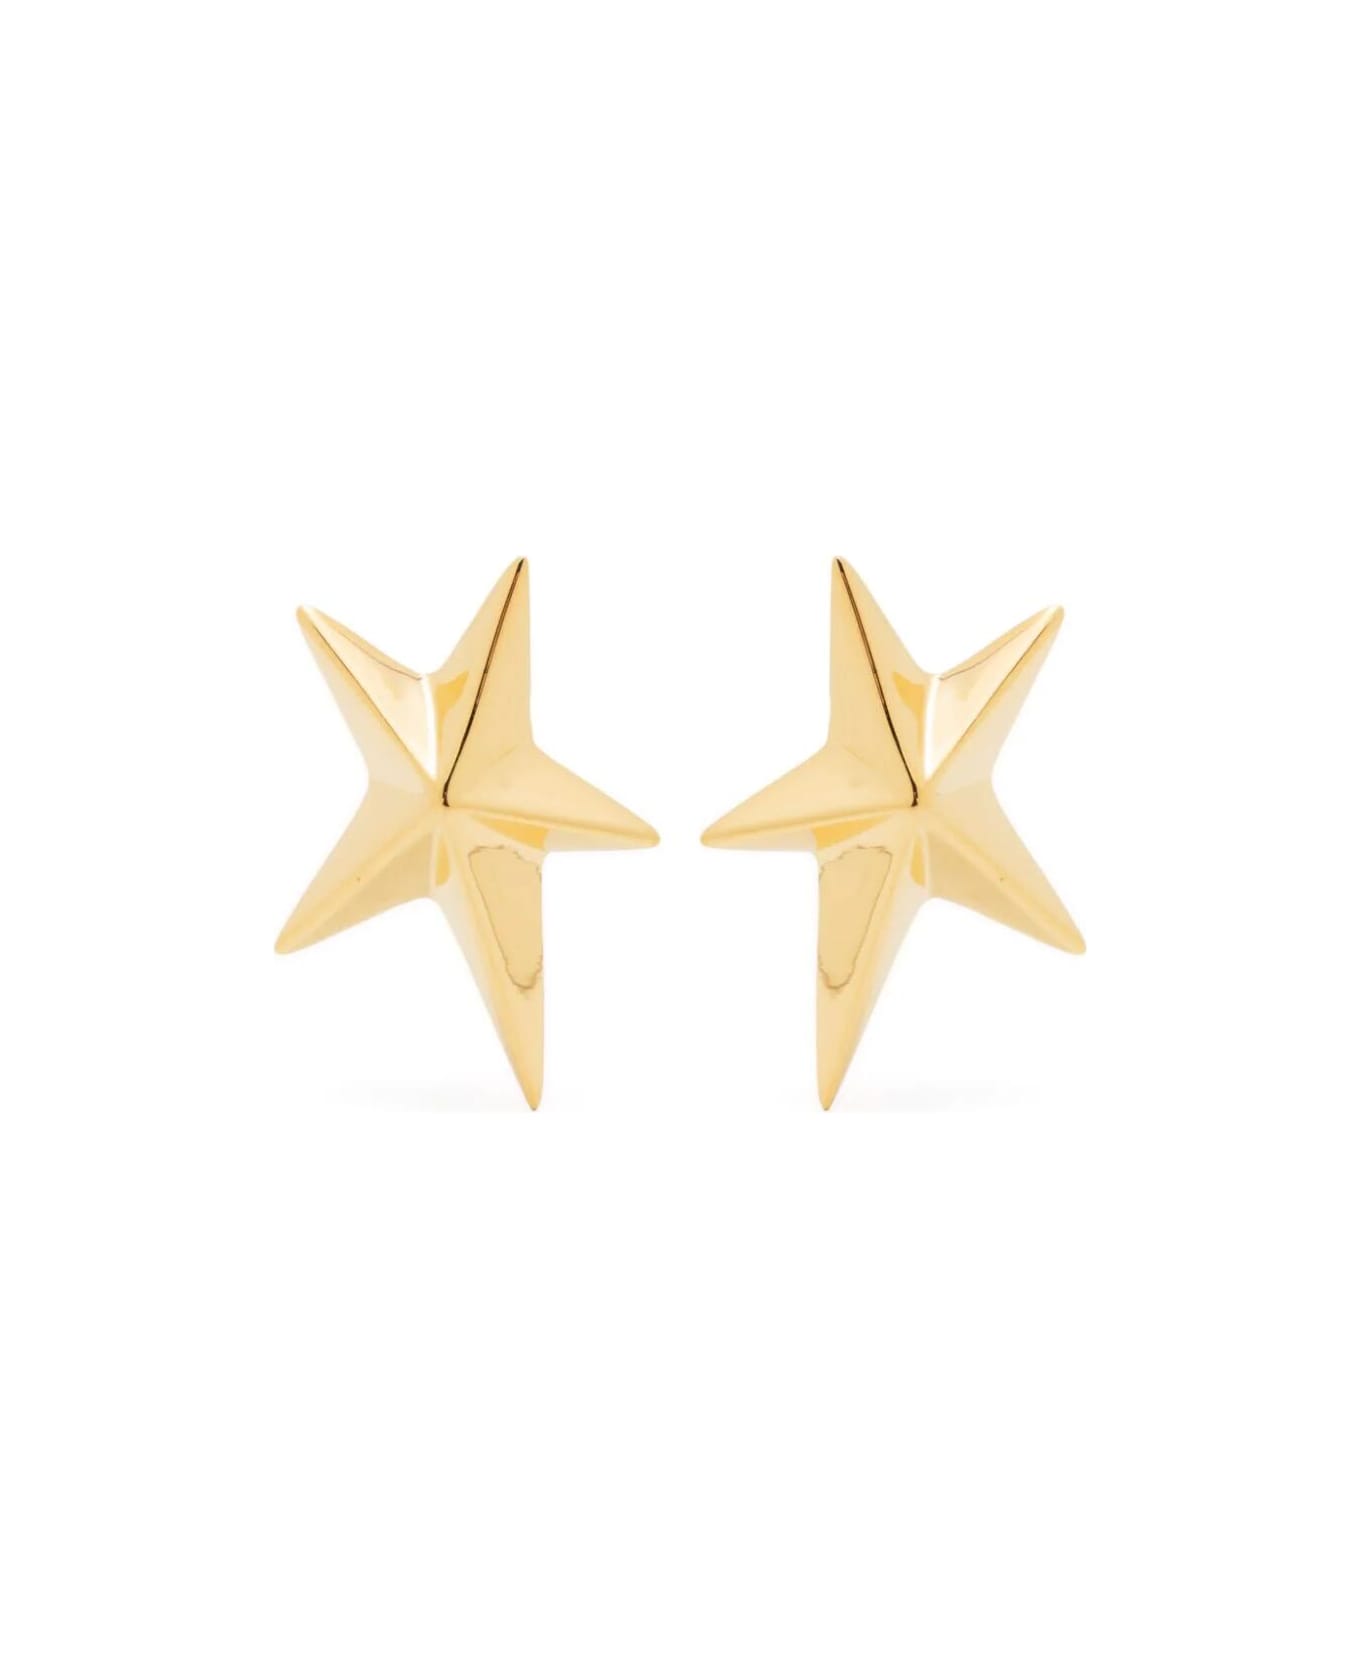 Mugler Bj0076 Earrings - Gold